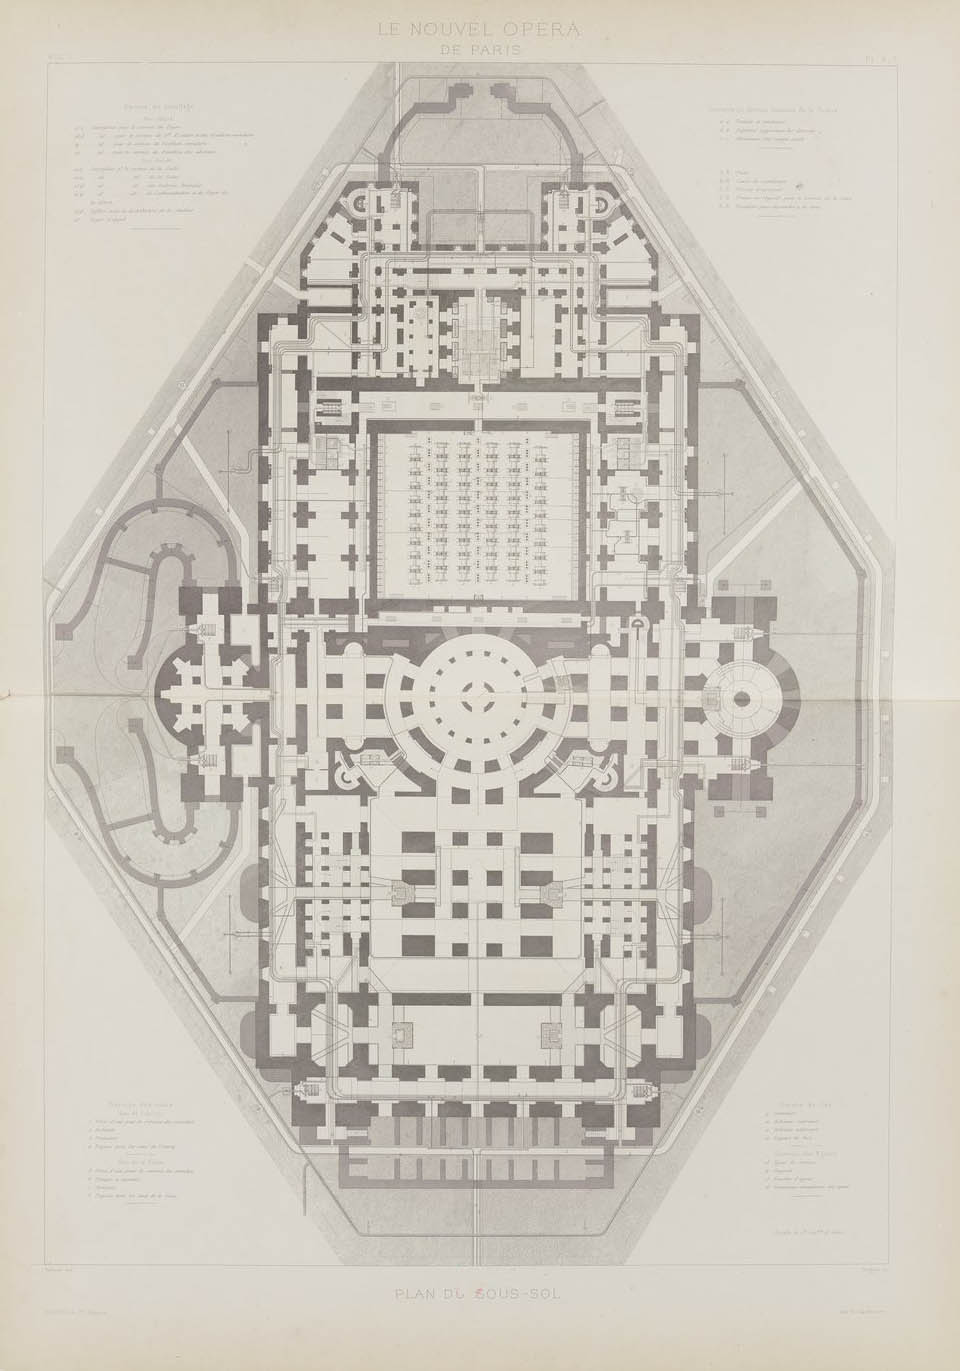 Plan du sous-sol, vol. I  © Cité de l'architecture & du patrimoine/Musée des Monuments français